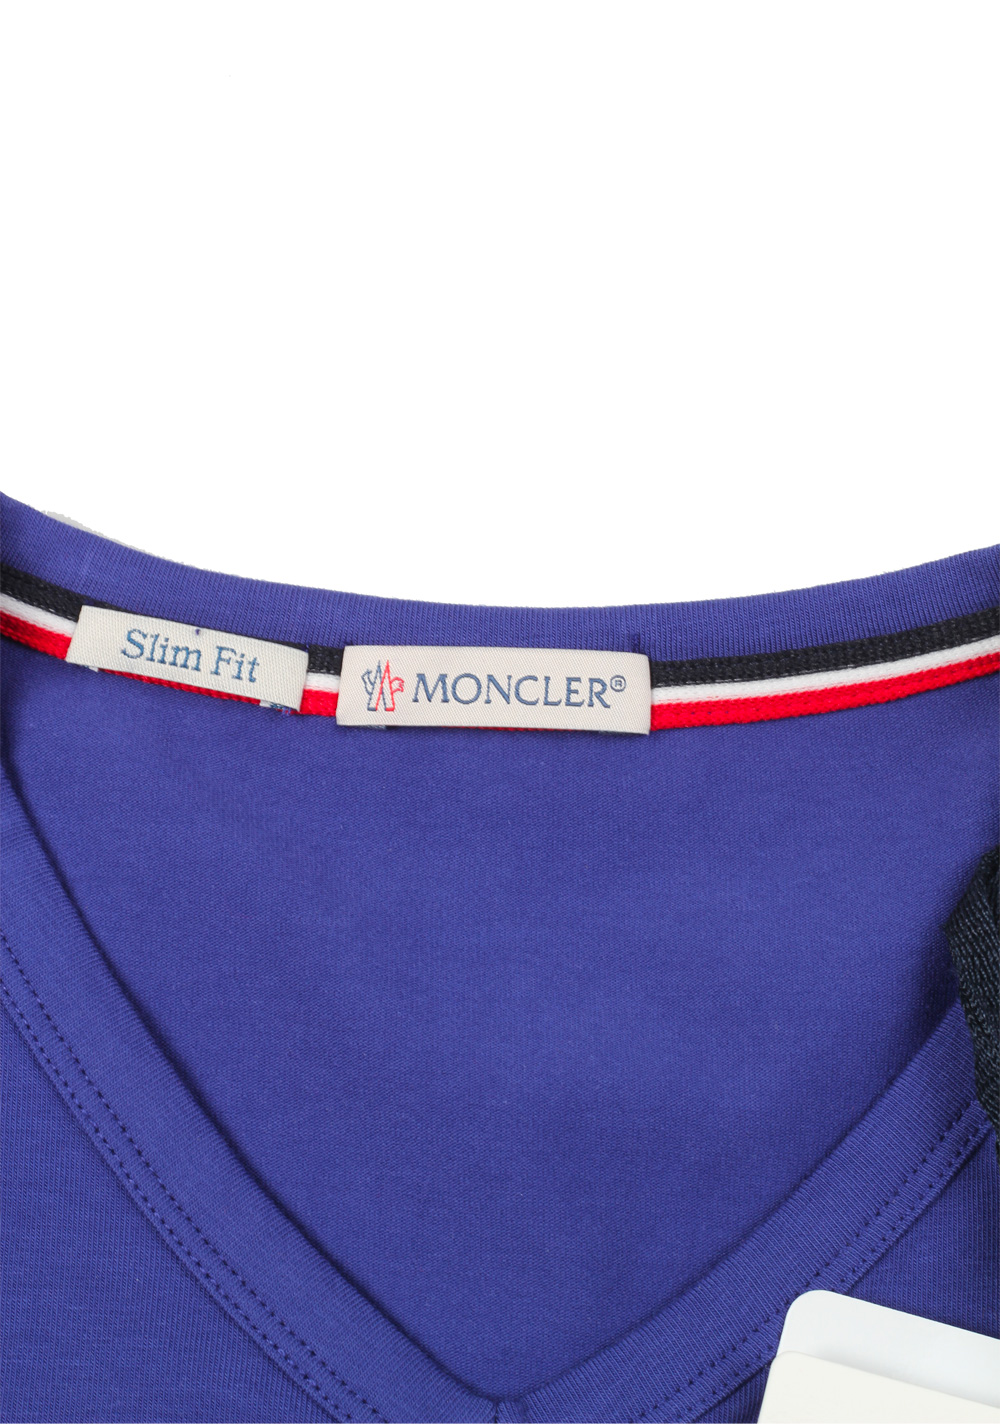 Moncler Lilac V Neck Tee Shirt Size S / 36R U.S. | Costume Limité